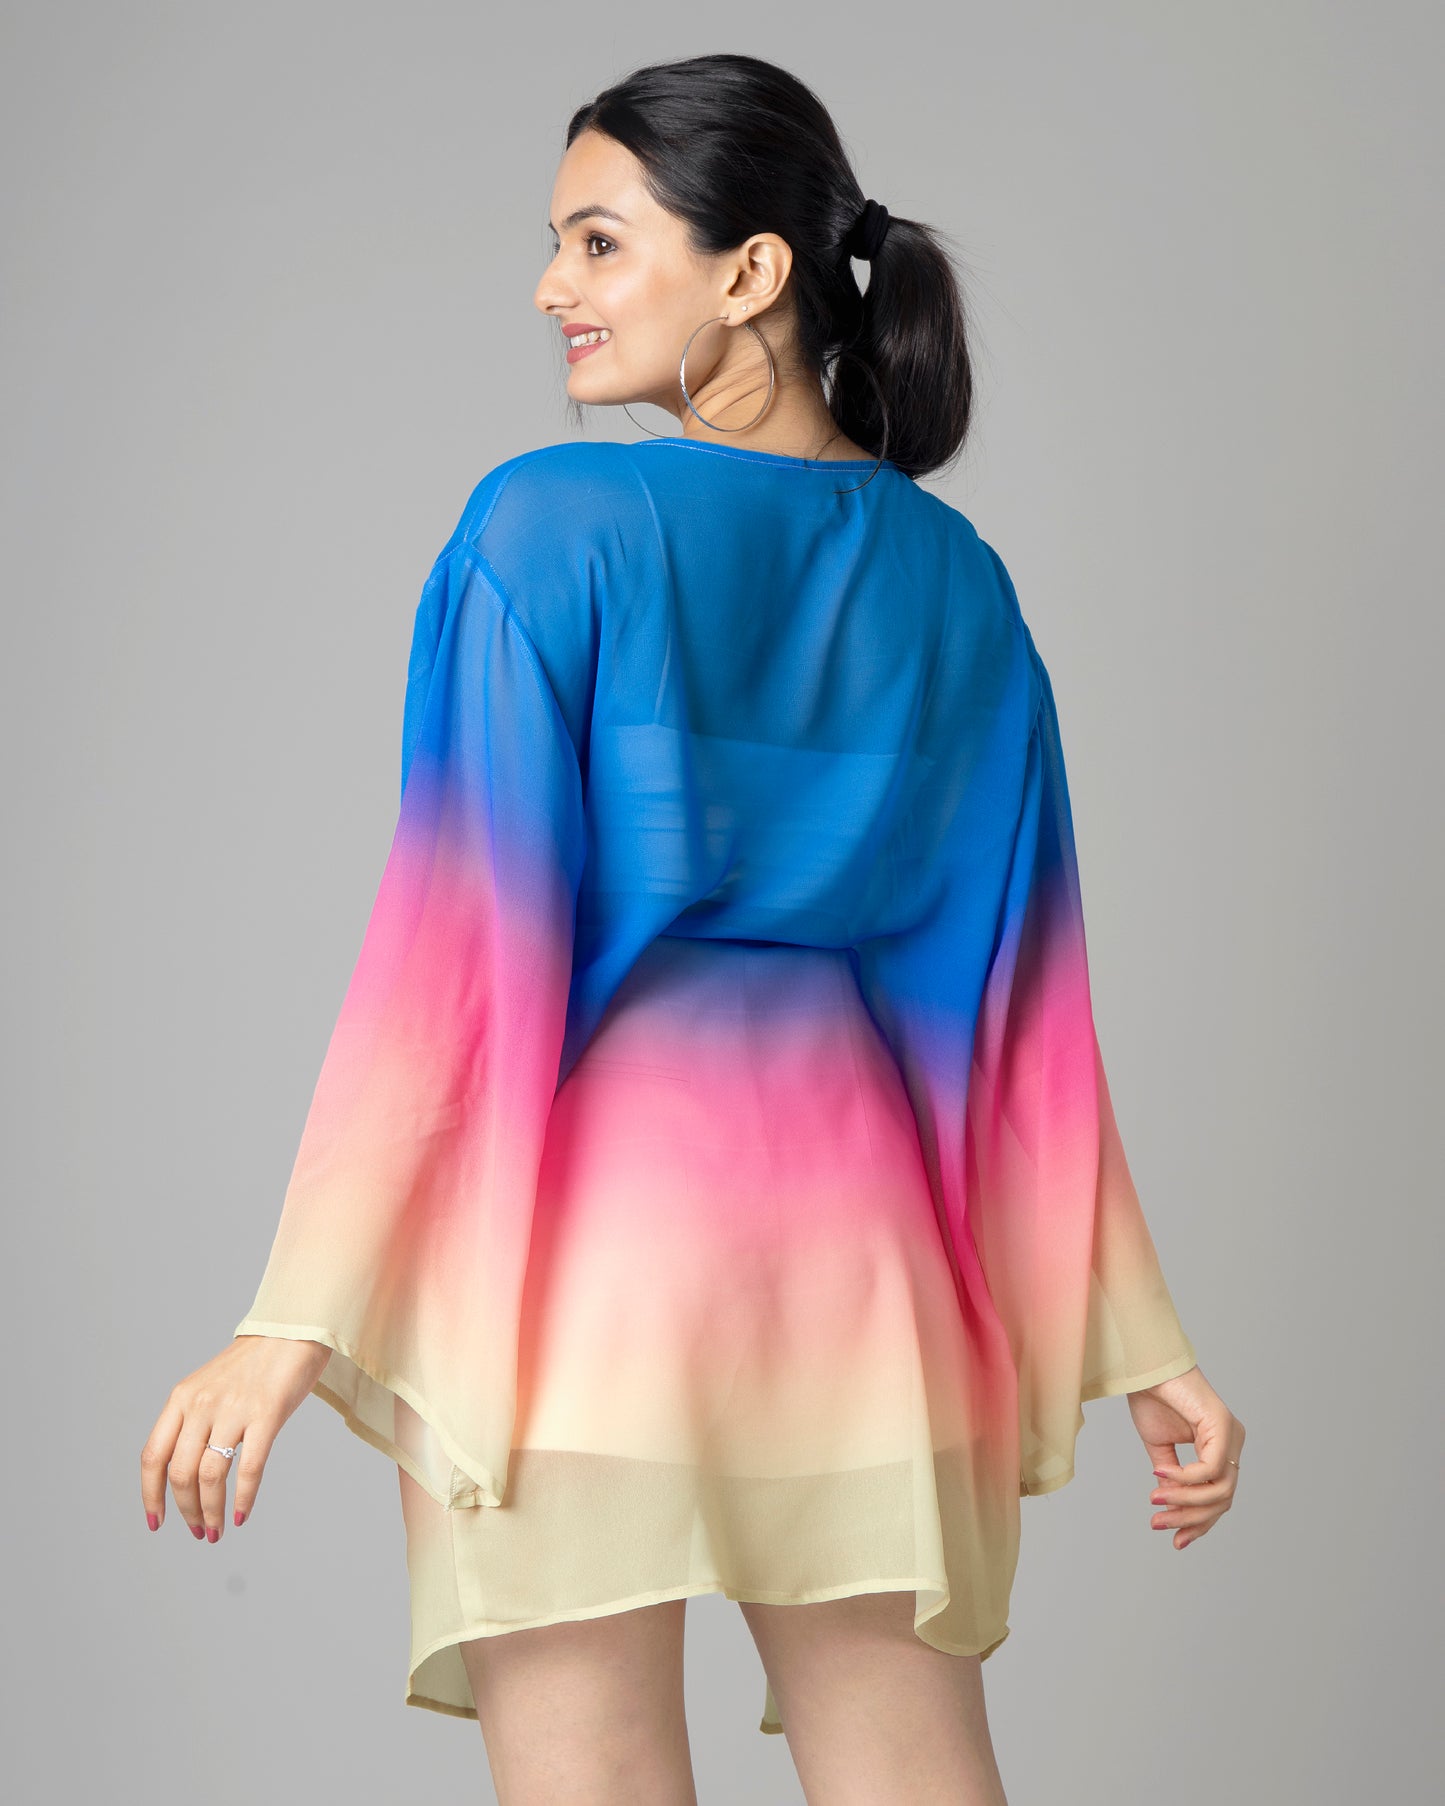 Exclusive Bollywood Designer Kimono Shrug For Women